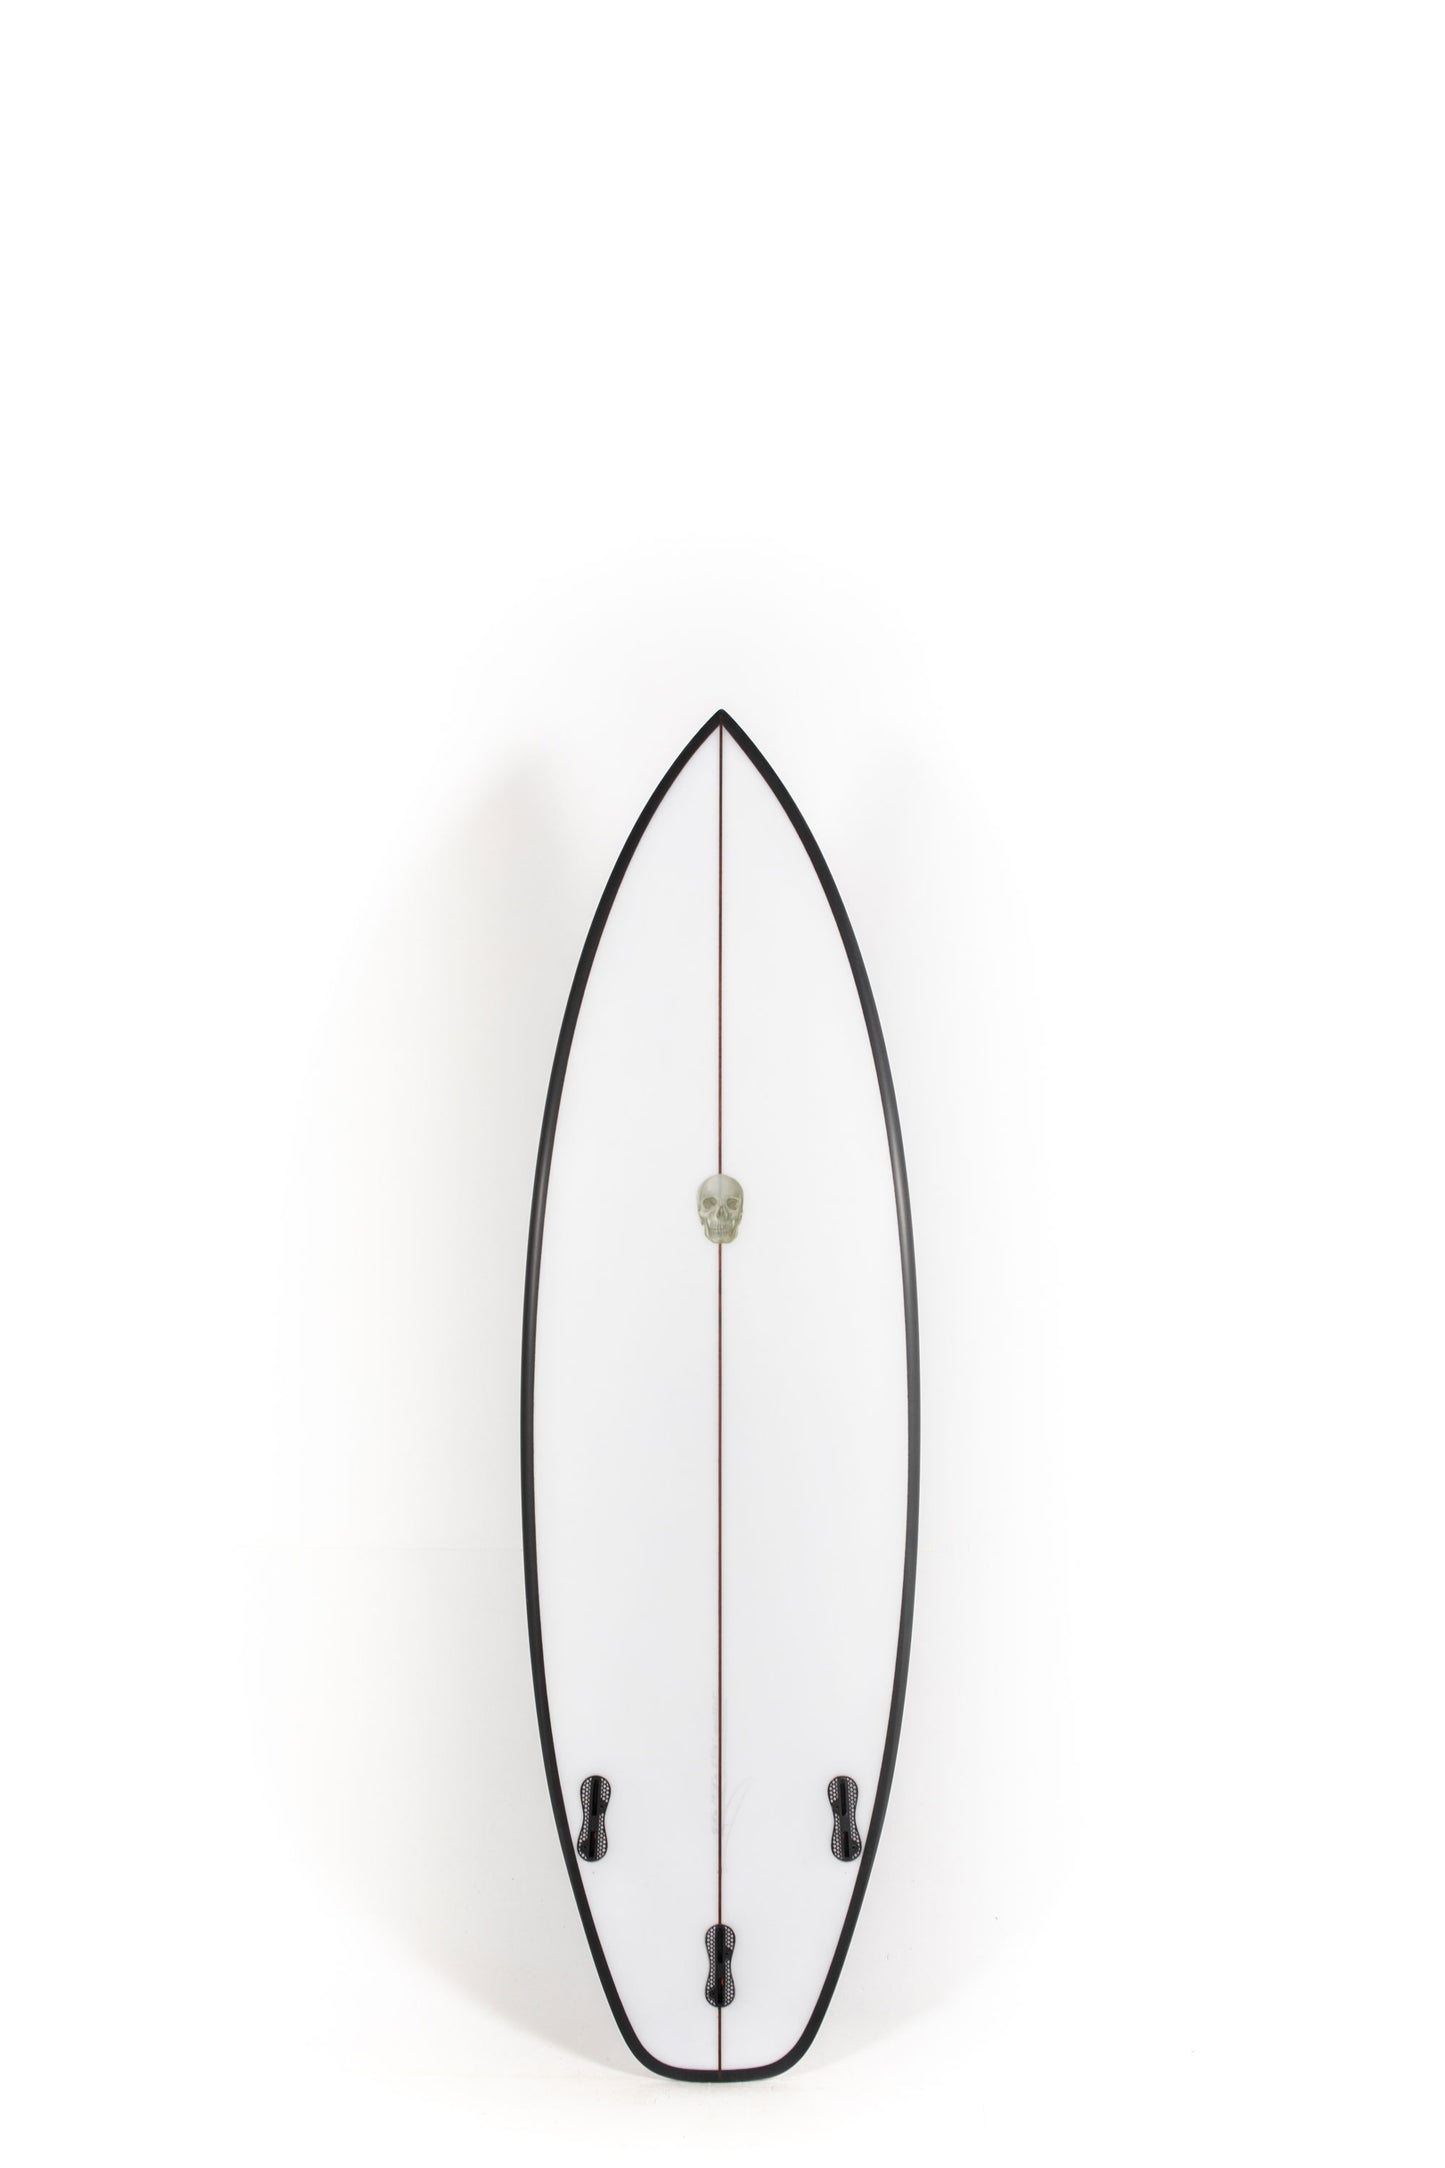 Pukas Surf Shop - Christenson Surfboards - OP2 - 5'8" x 19 1/4 x 2 5/16 x 26.9L - CX04805